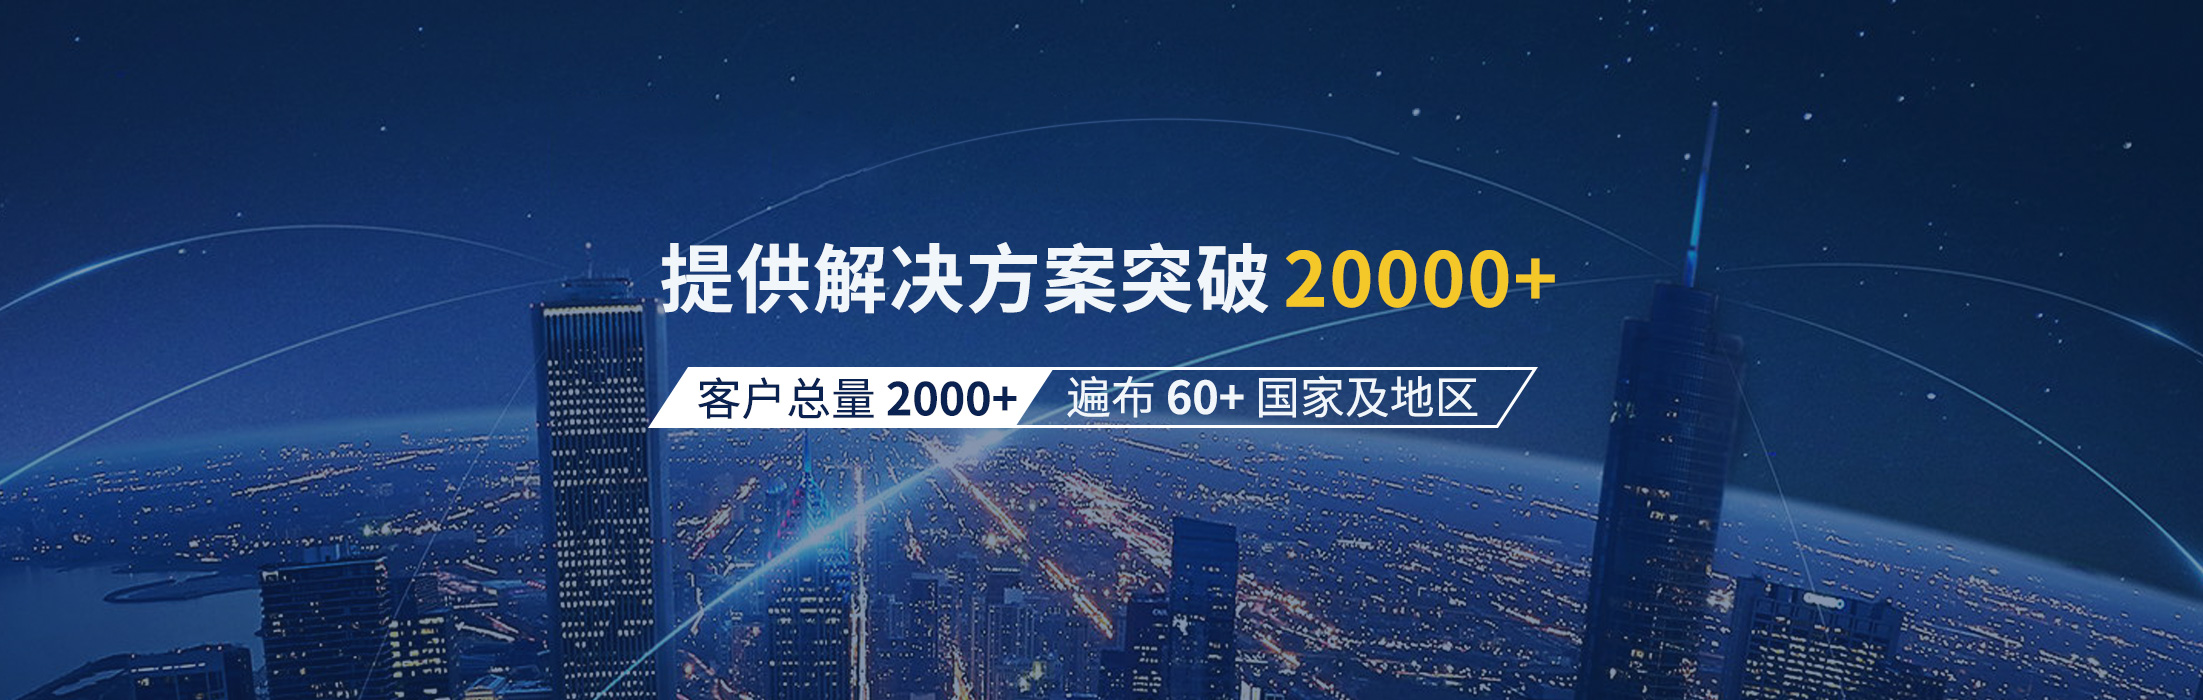 日联科技20000+客户案例